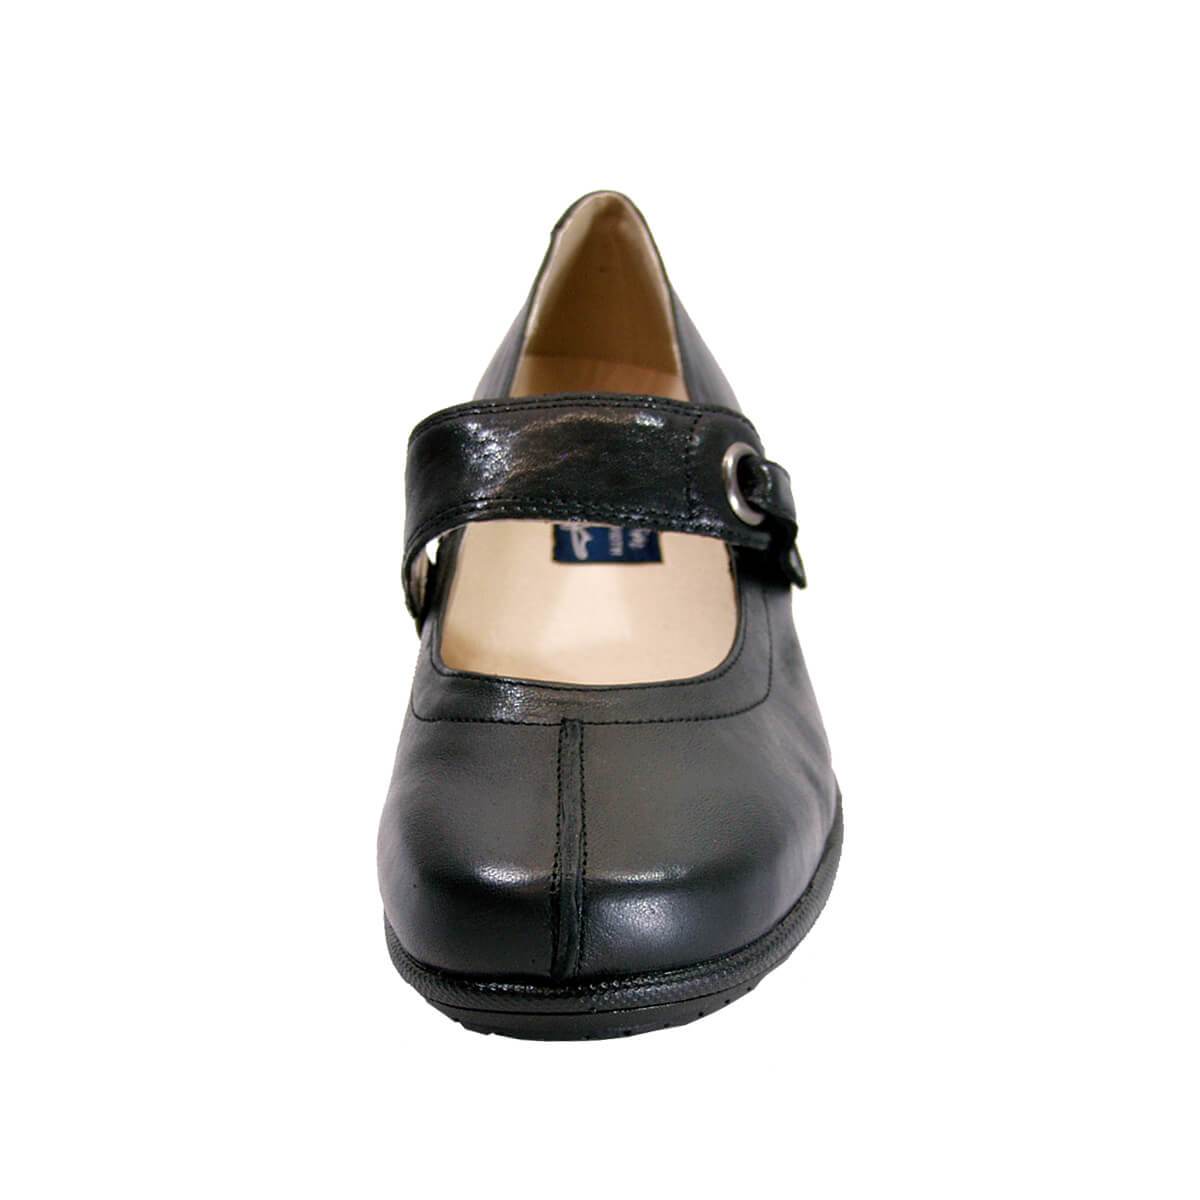 PEERAGE Deena Women's Wide Width Mary Jane Leather Shoes